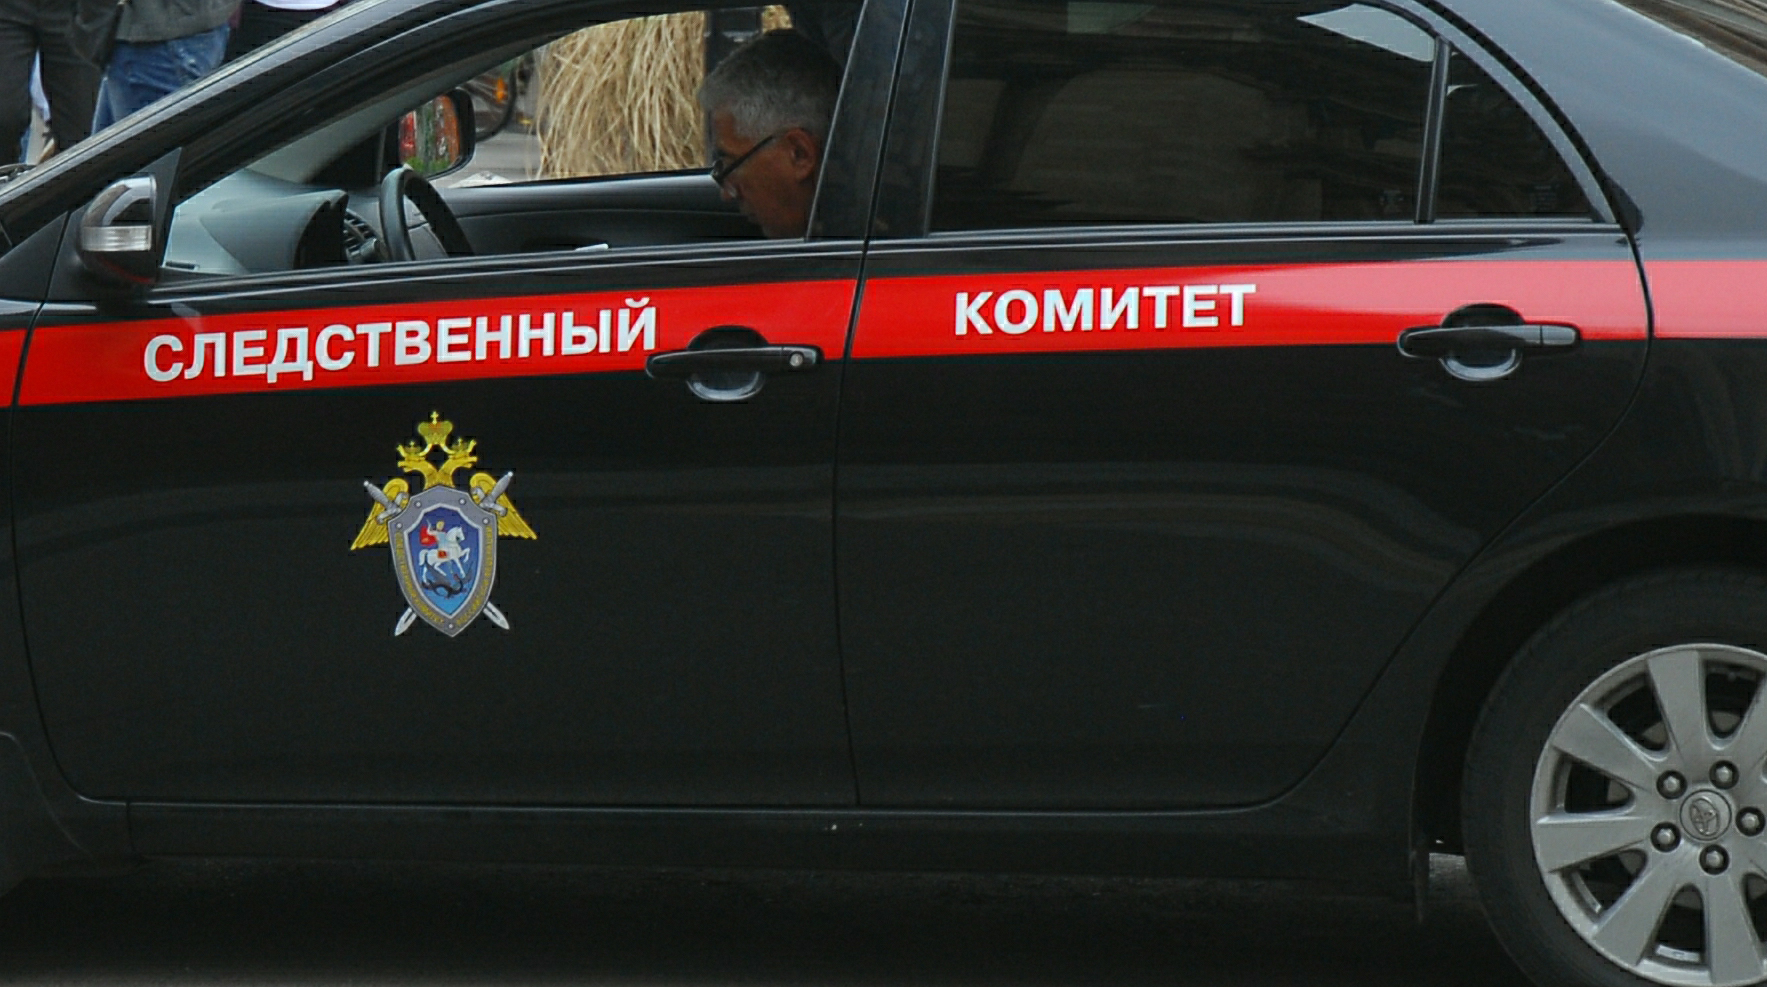 Полиция отменила международный розыск Павла Фукса из-за «технической ошибки» Фото: © GLOBAL LOOK press/Sergey Kovalev